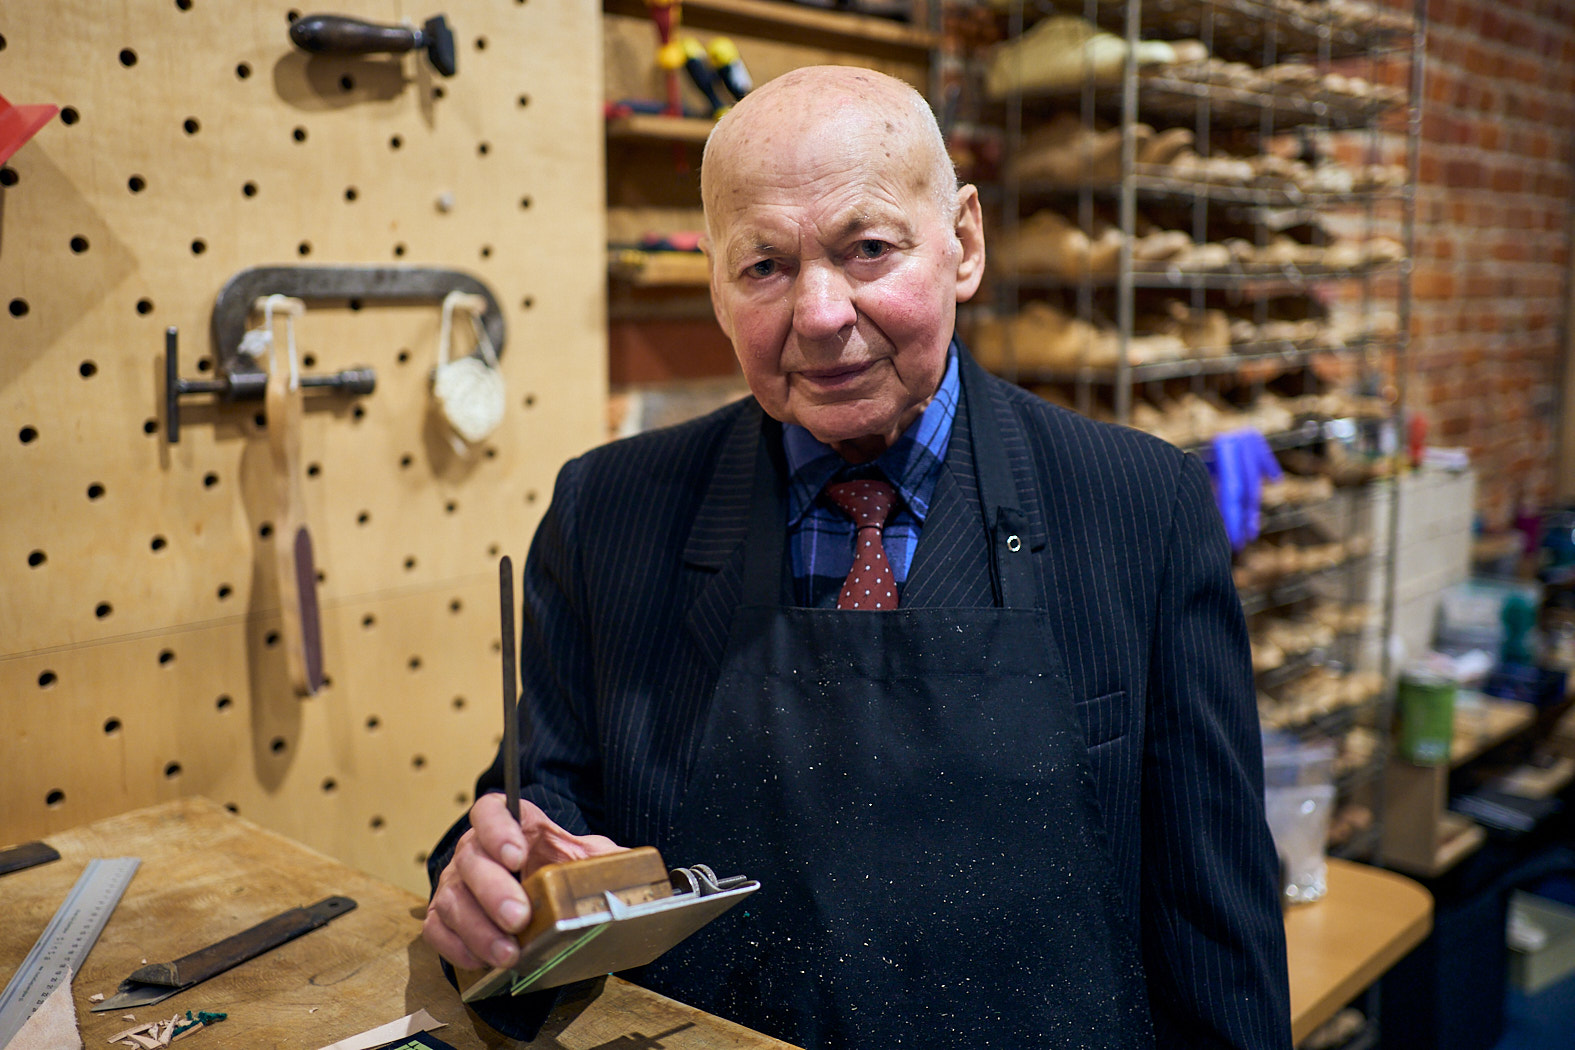 Zdjęcie. Starszy mężczyzna w garniturze w prążki i skórzanym fartuchu, trzymający narzędzie kaletnicze w dłoni.